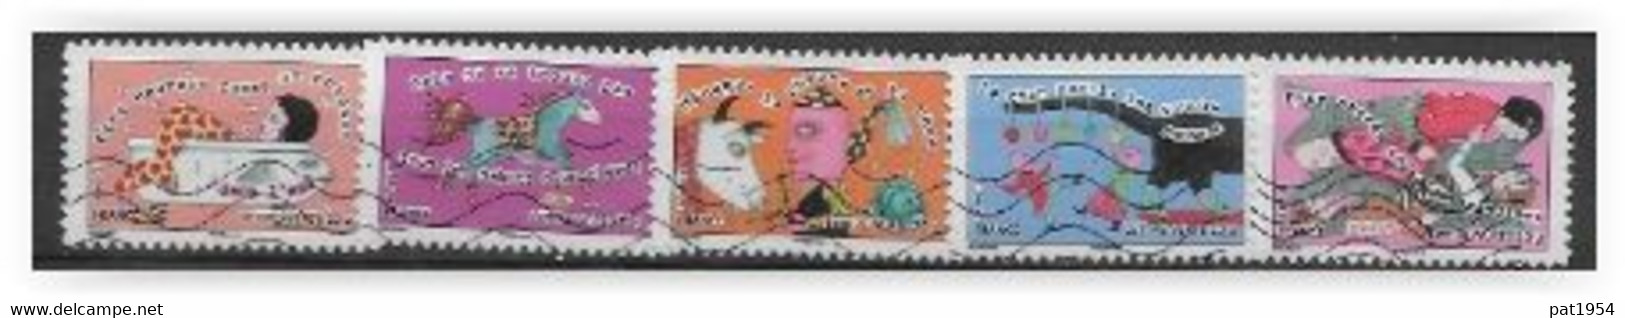 France 2013 Adhésifs N° 790, 791, 795, 798 Et 799 Oblitérés Sourires - Used Stamps